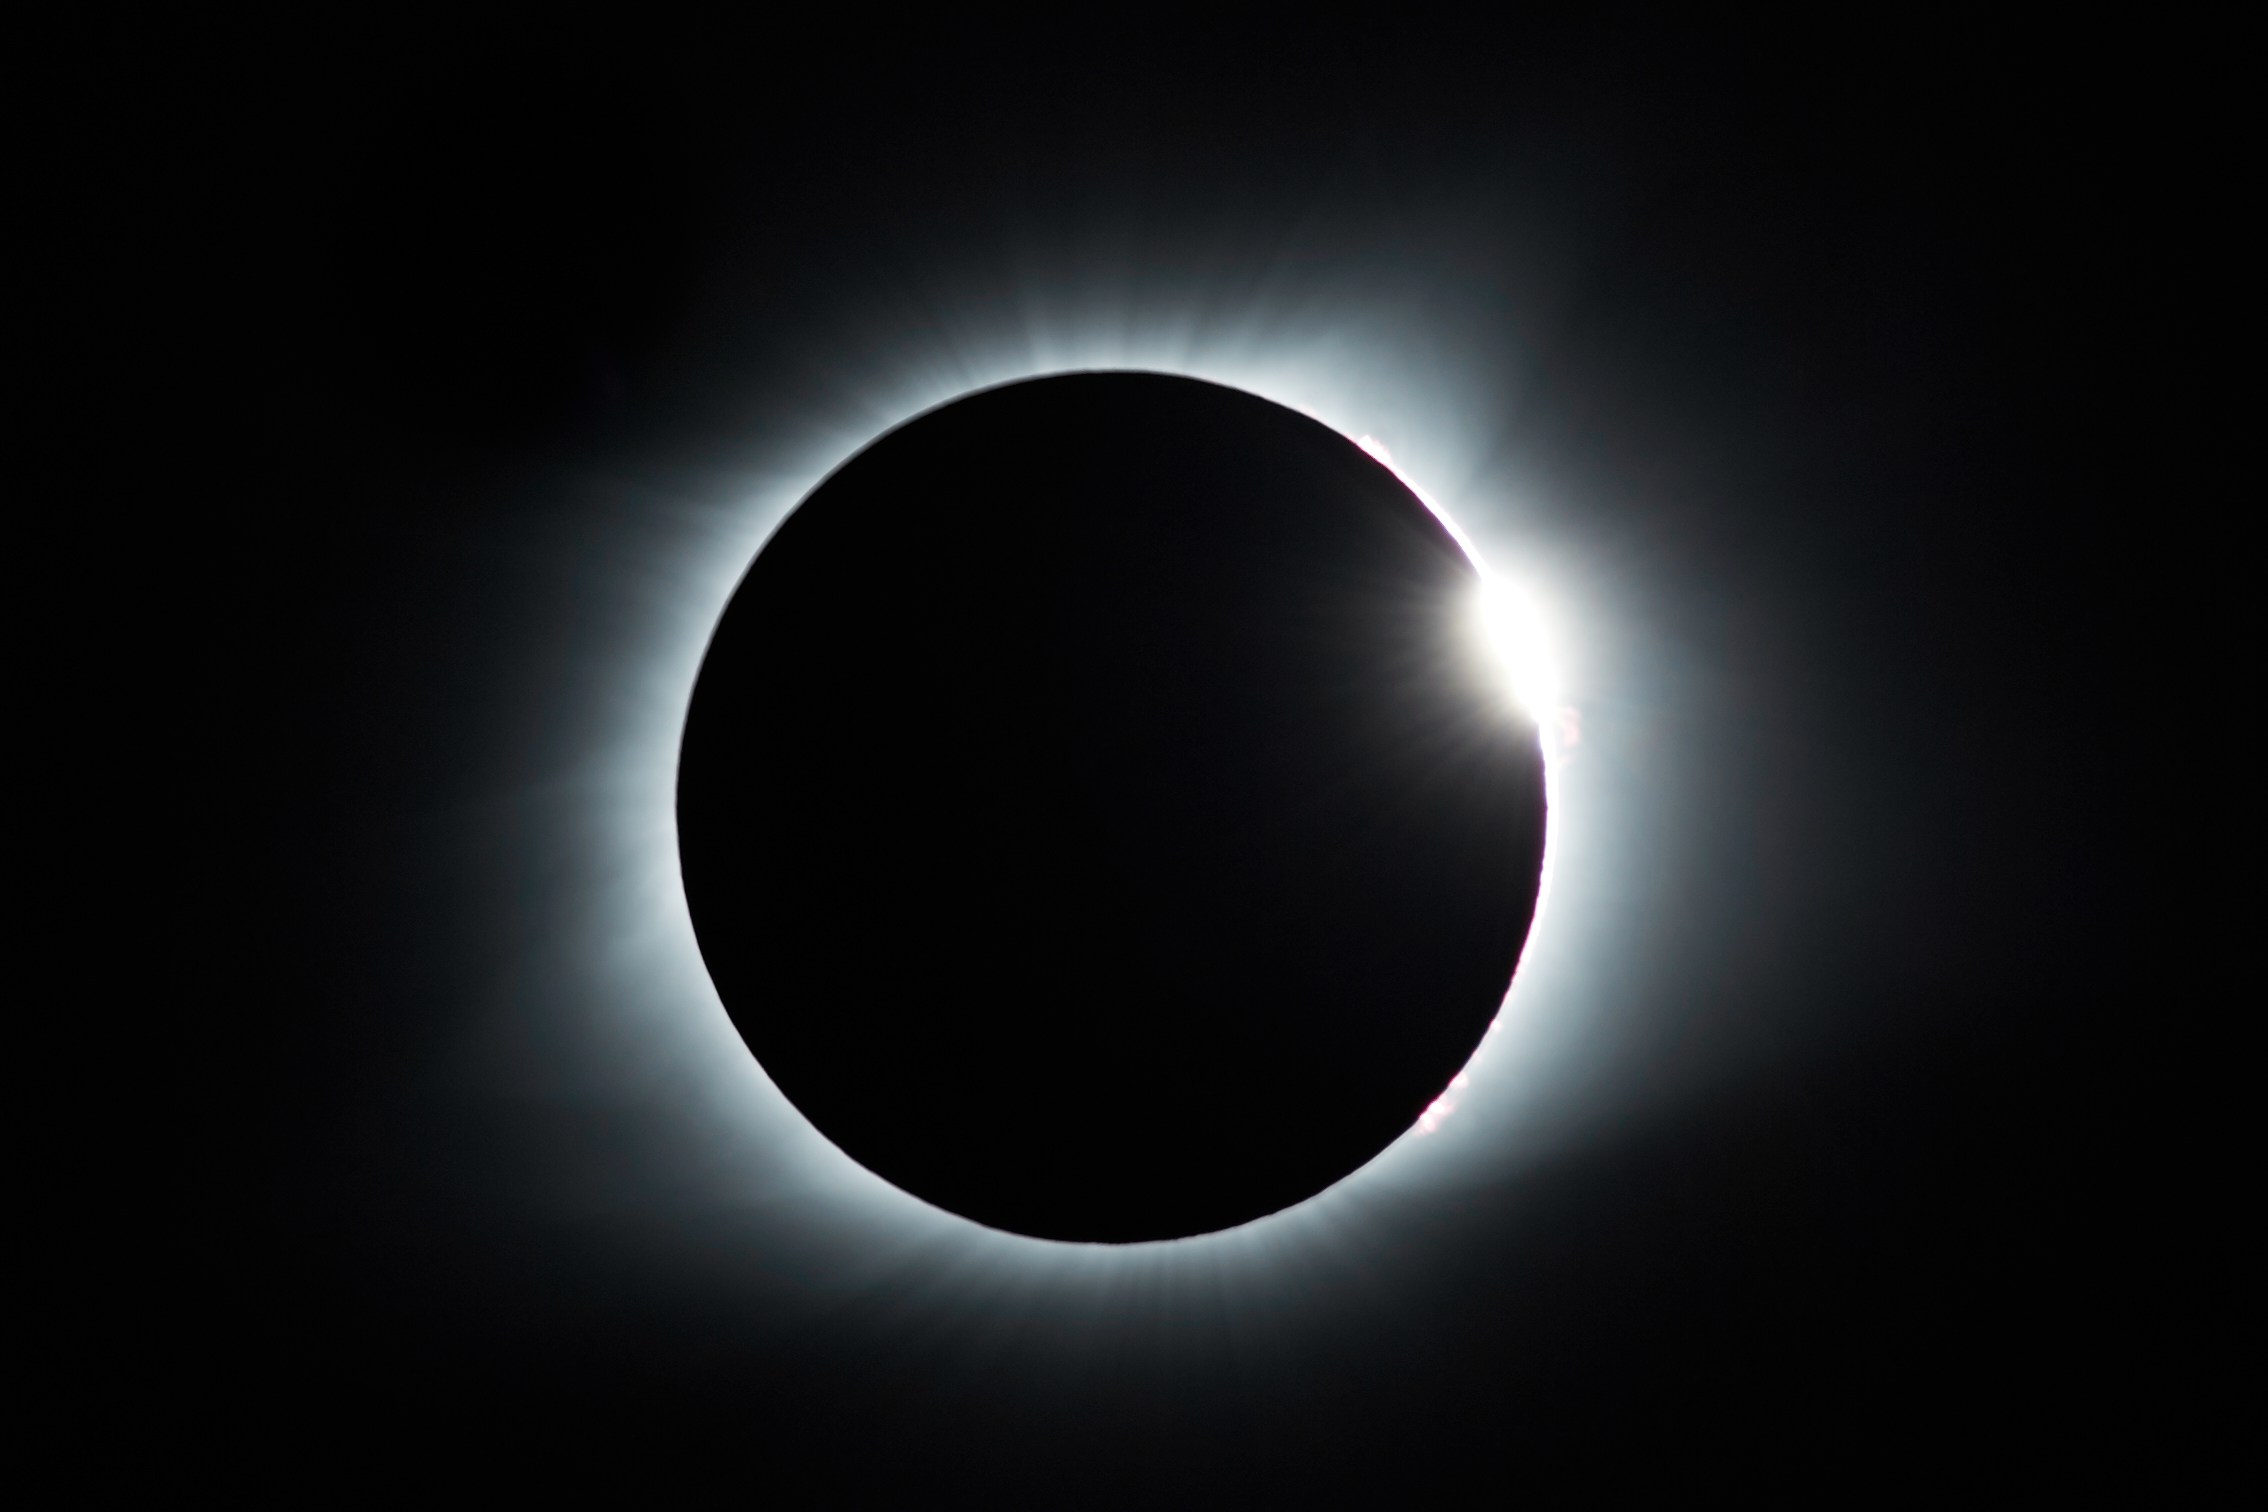 El próximo 8 de abrilDespegar te invita a disfrutar del turismo astronómico con el eclipse total de sol